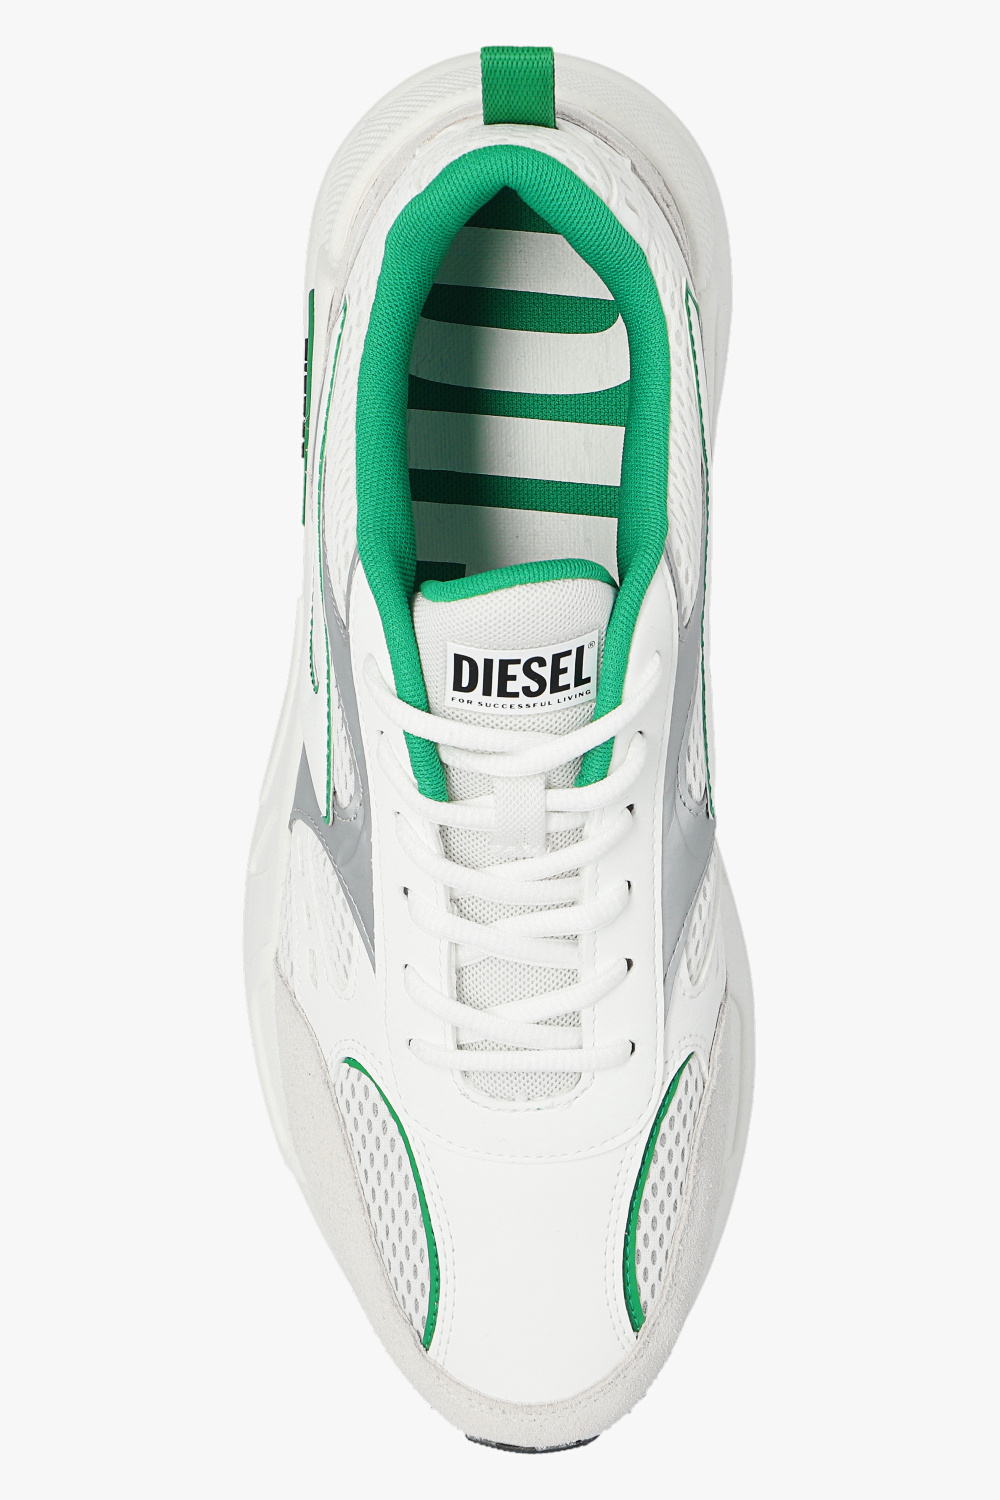 Diesel ‘S-SERENDIPITY LOW’ sneakers